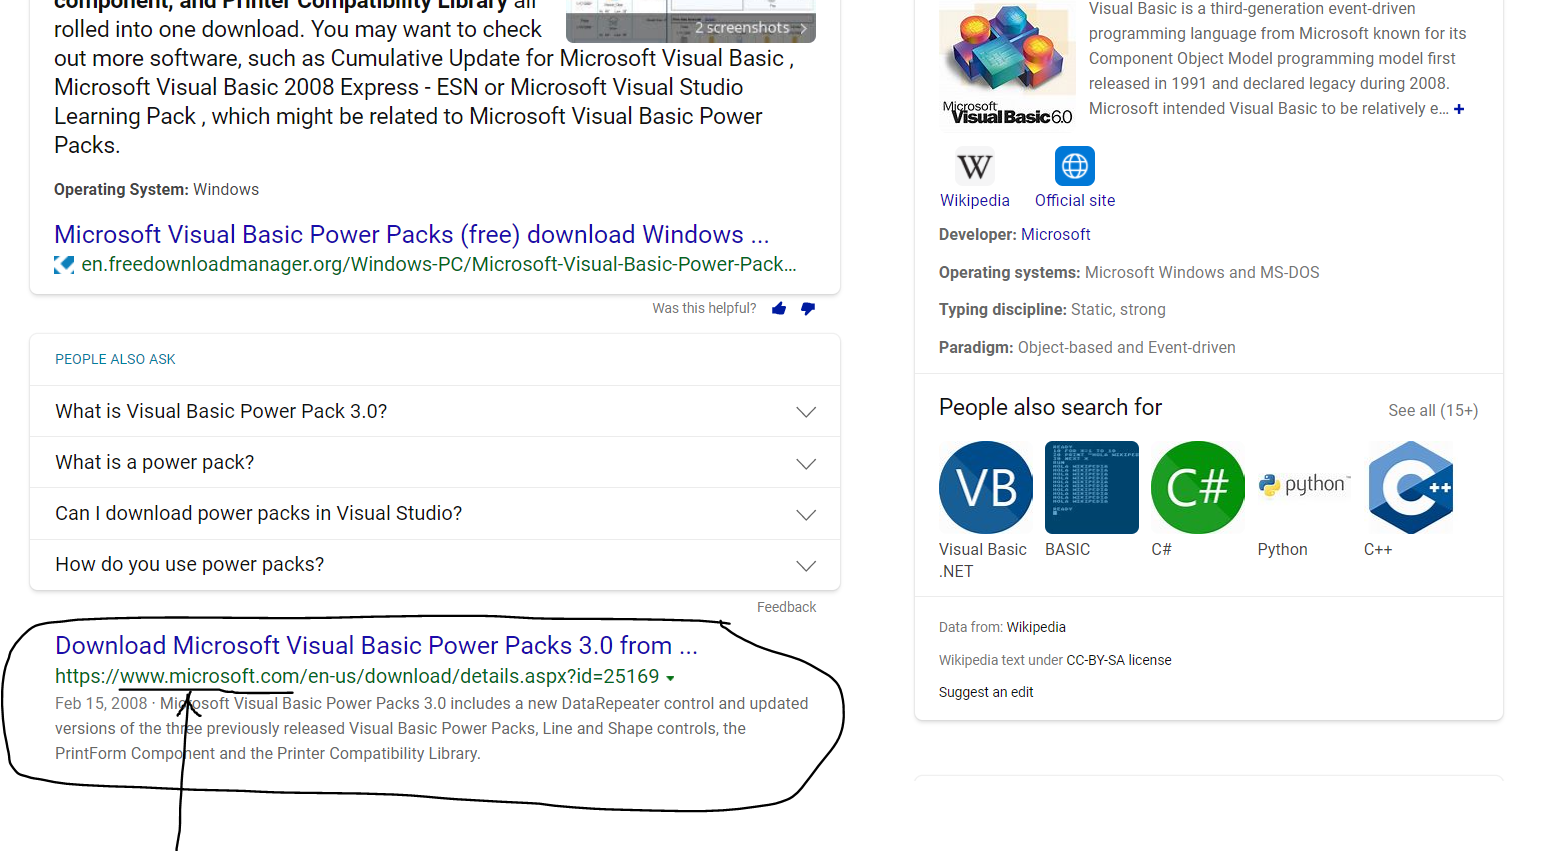 Visual Basic PowerPacks 2